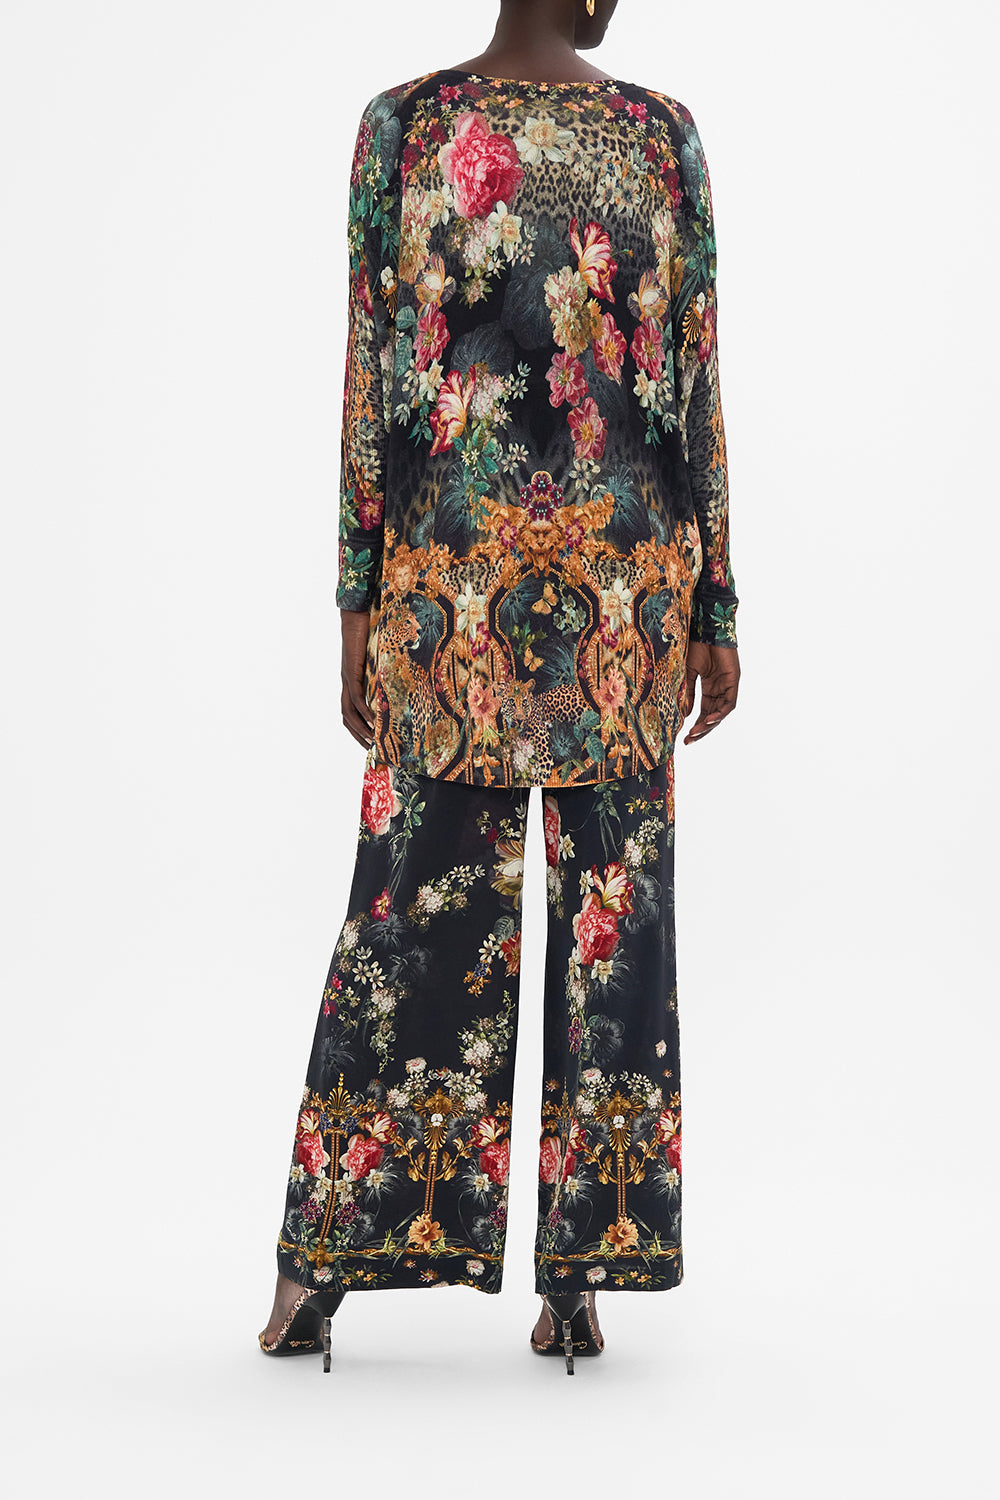 ZARA Floral Long Sleeve Silk Bodysuit Blouse Top S